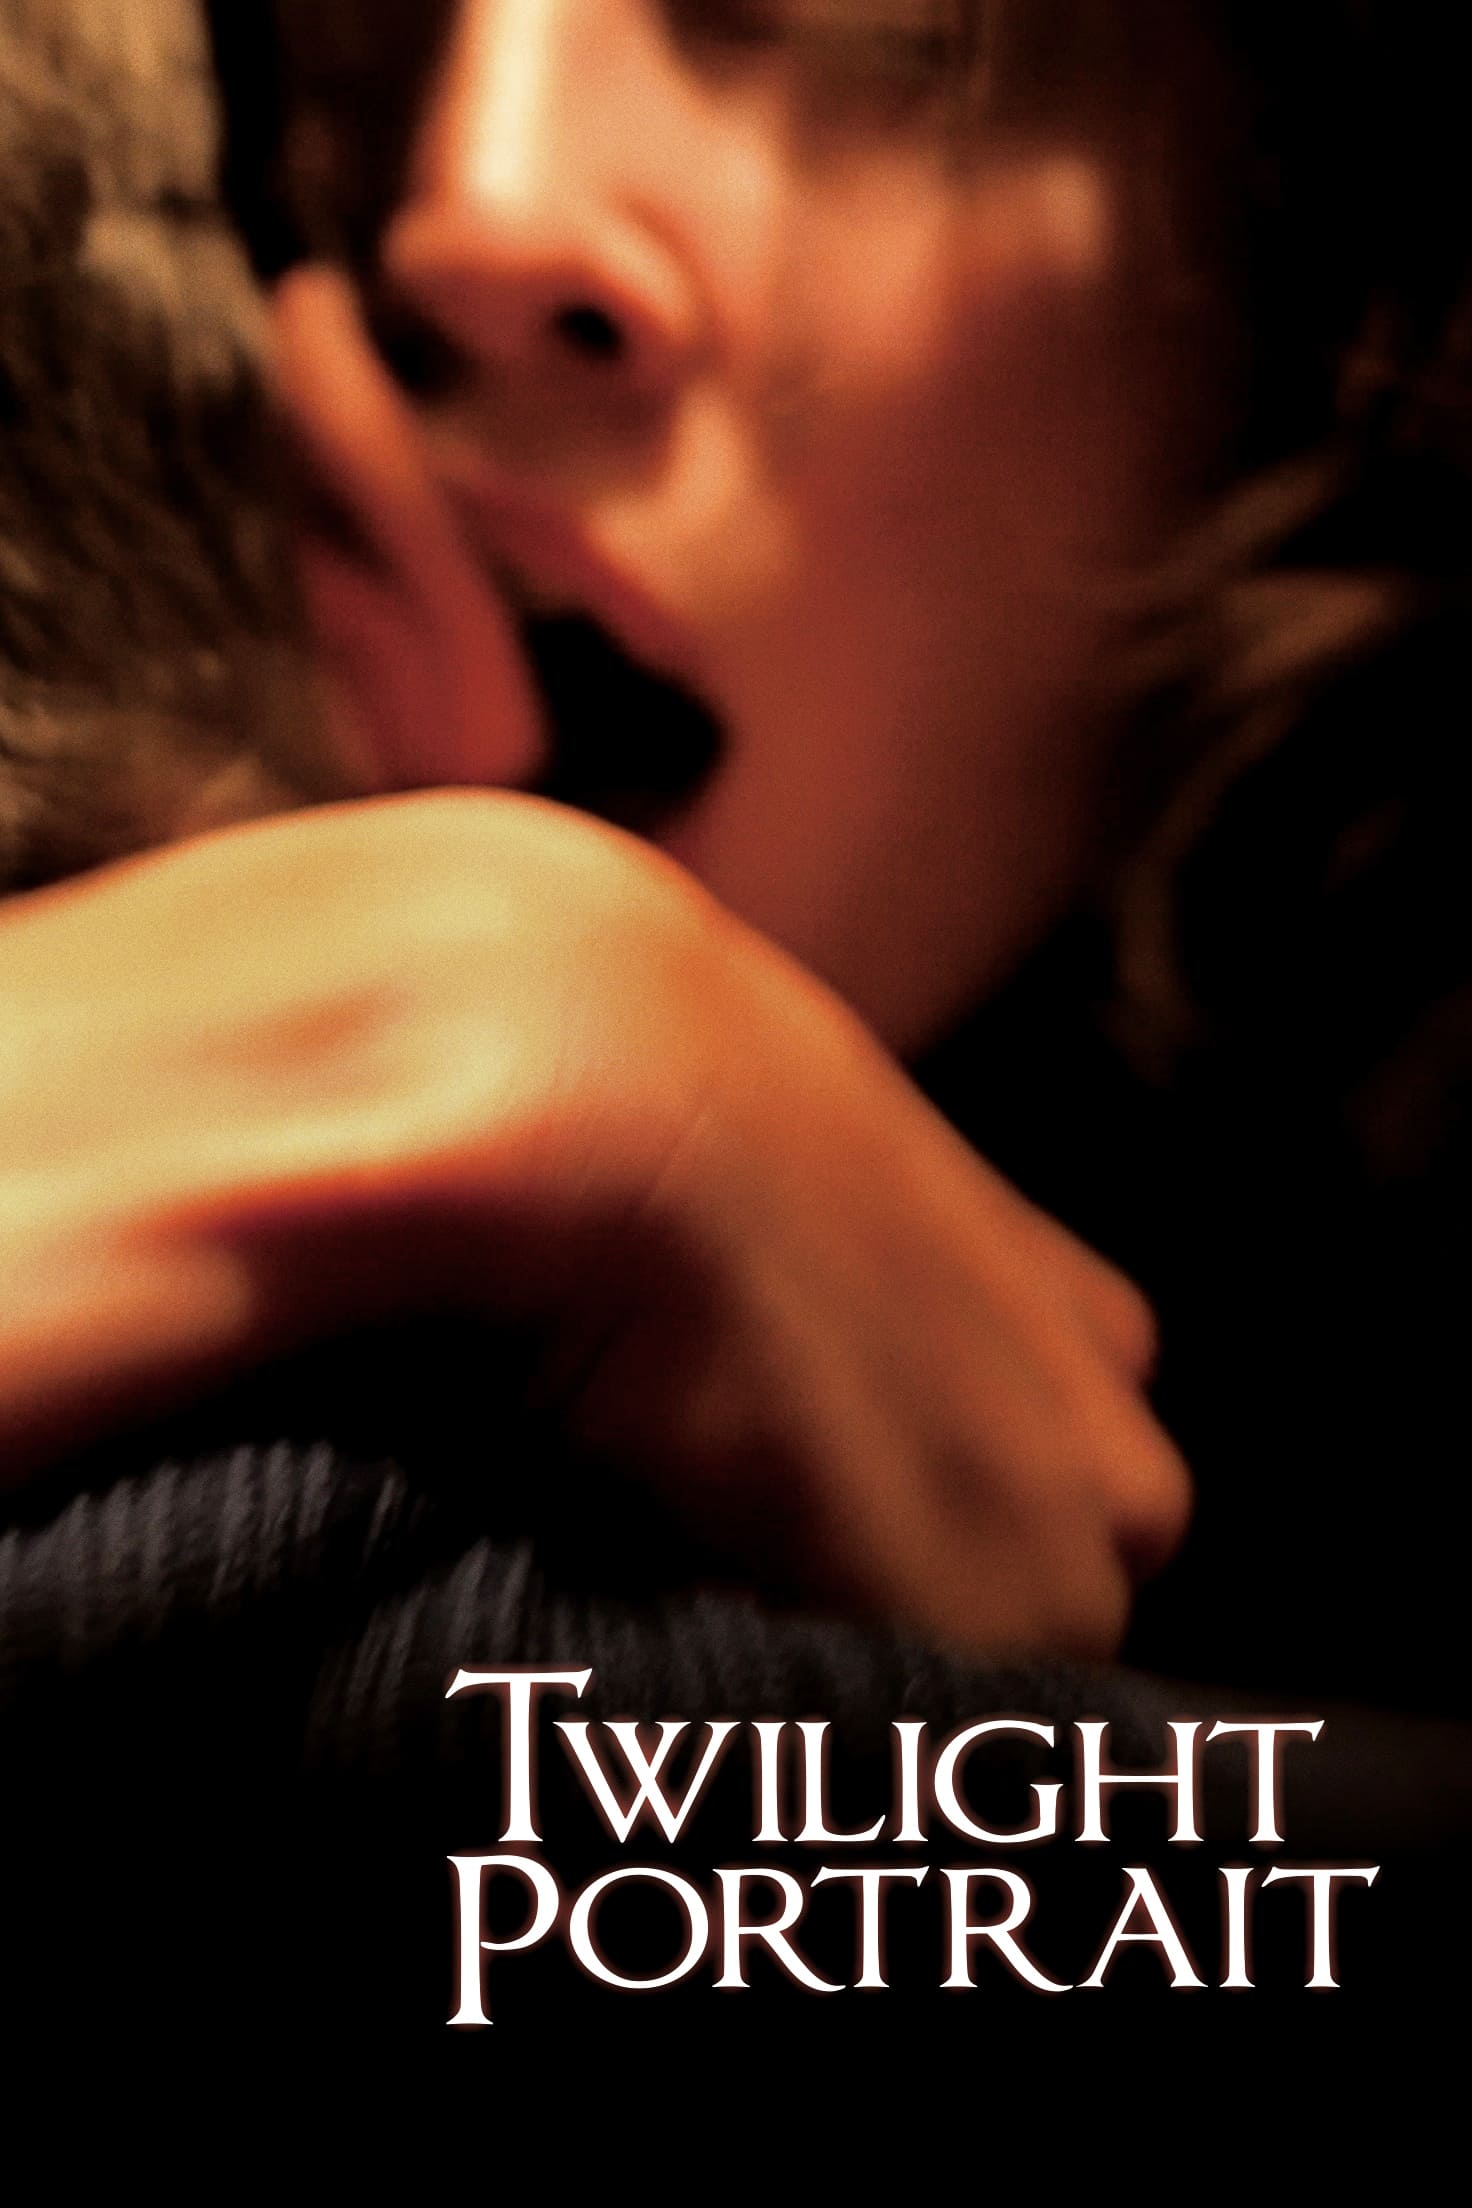 Twilight Portrait [Sub-ITA] (2011)